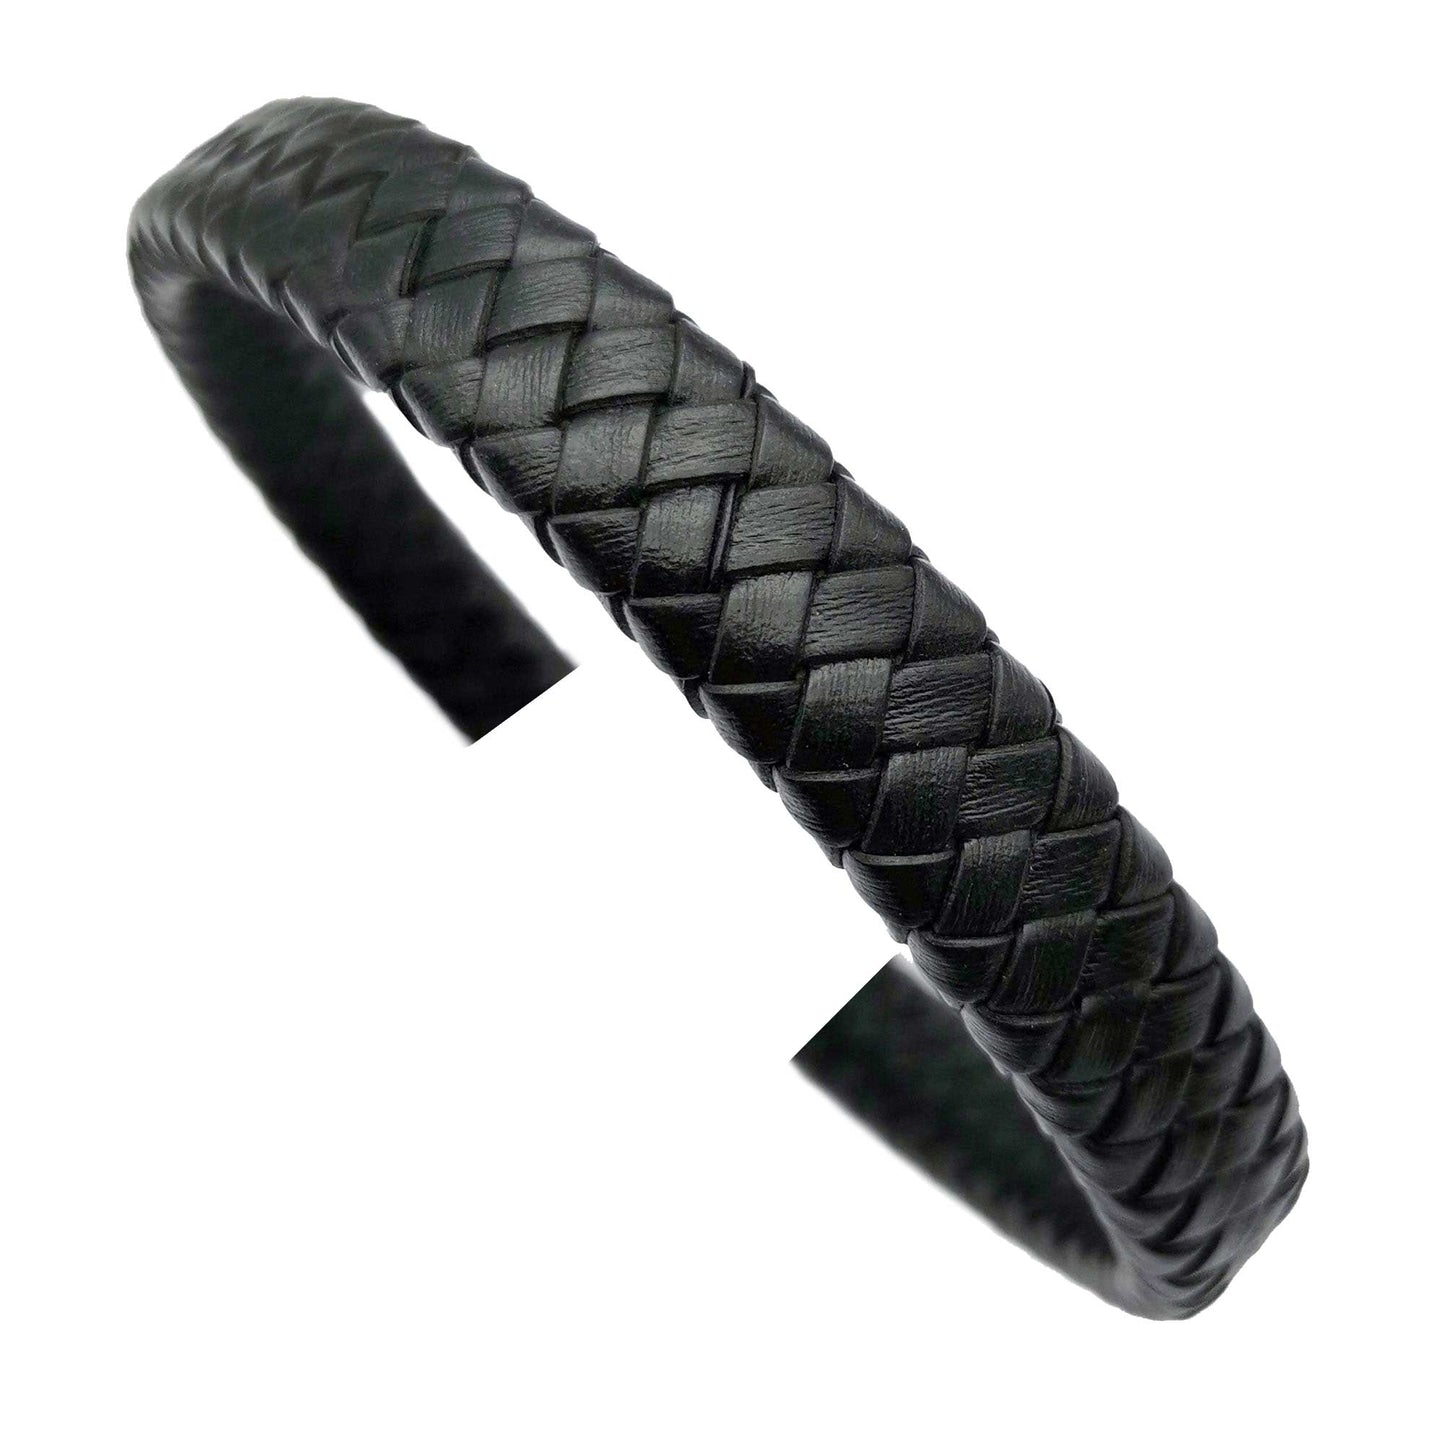 ShapesbyX-Distressed Blue 12 mm x 6 mm geflochtenes Lederband, geflochtenes Armband, Herstellung von Lederband, Schmuck, Basteln